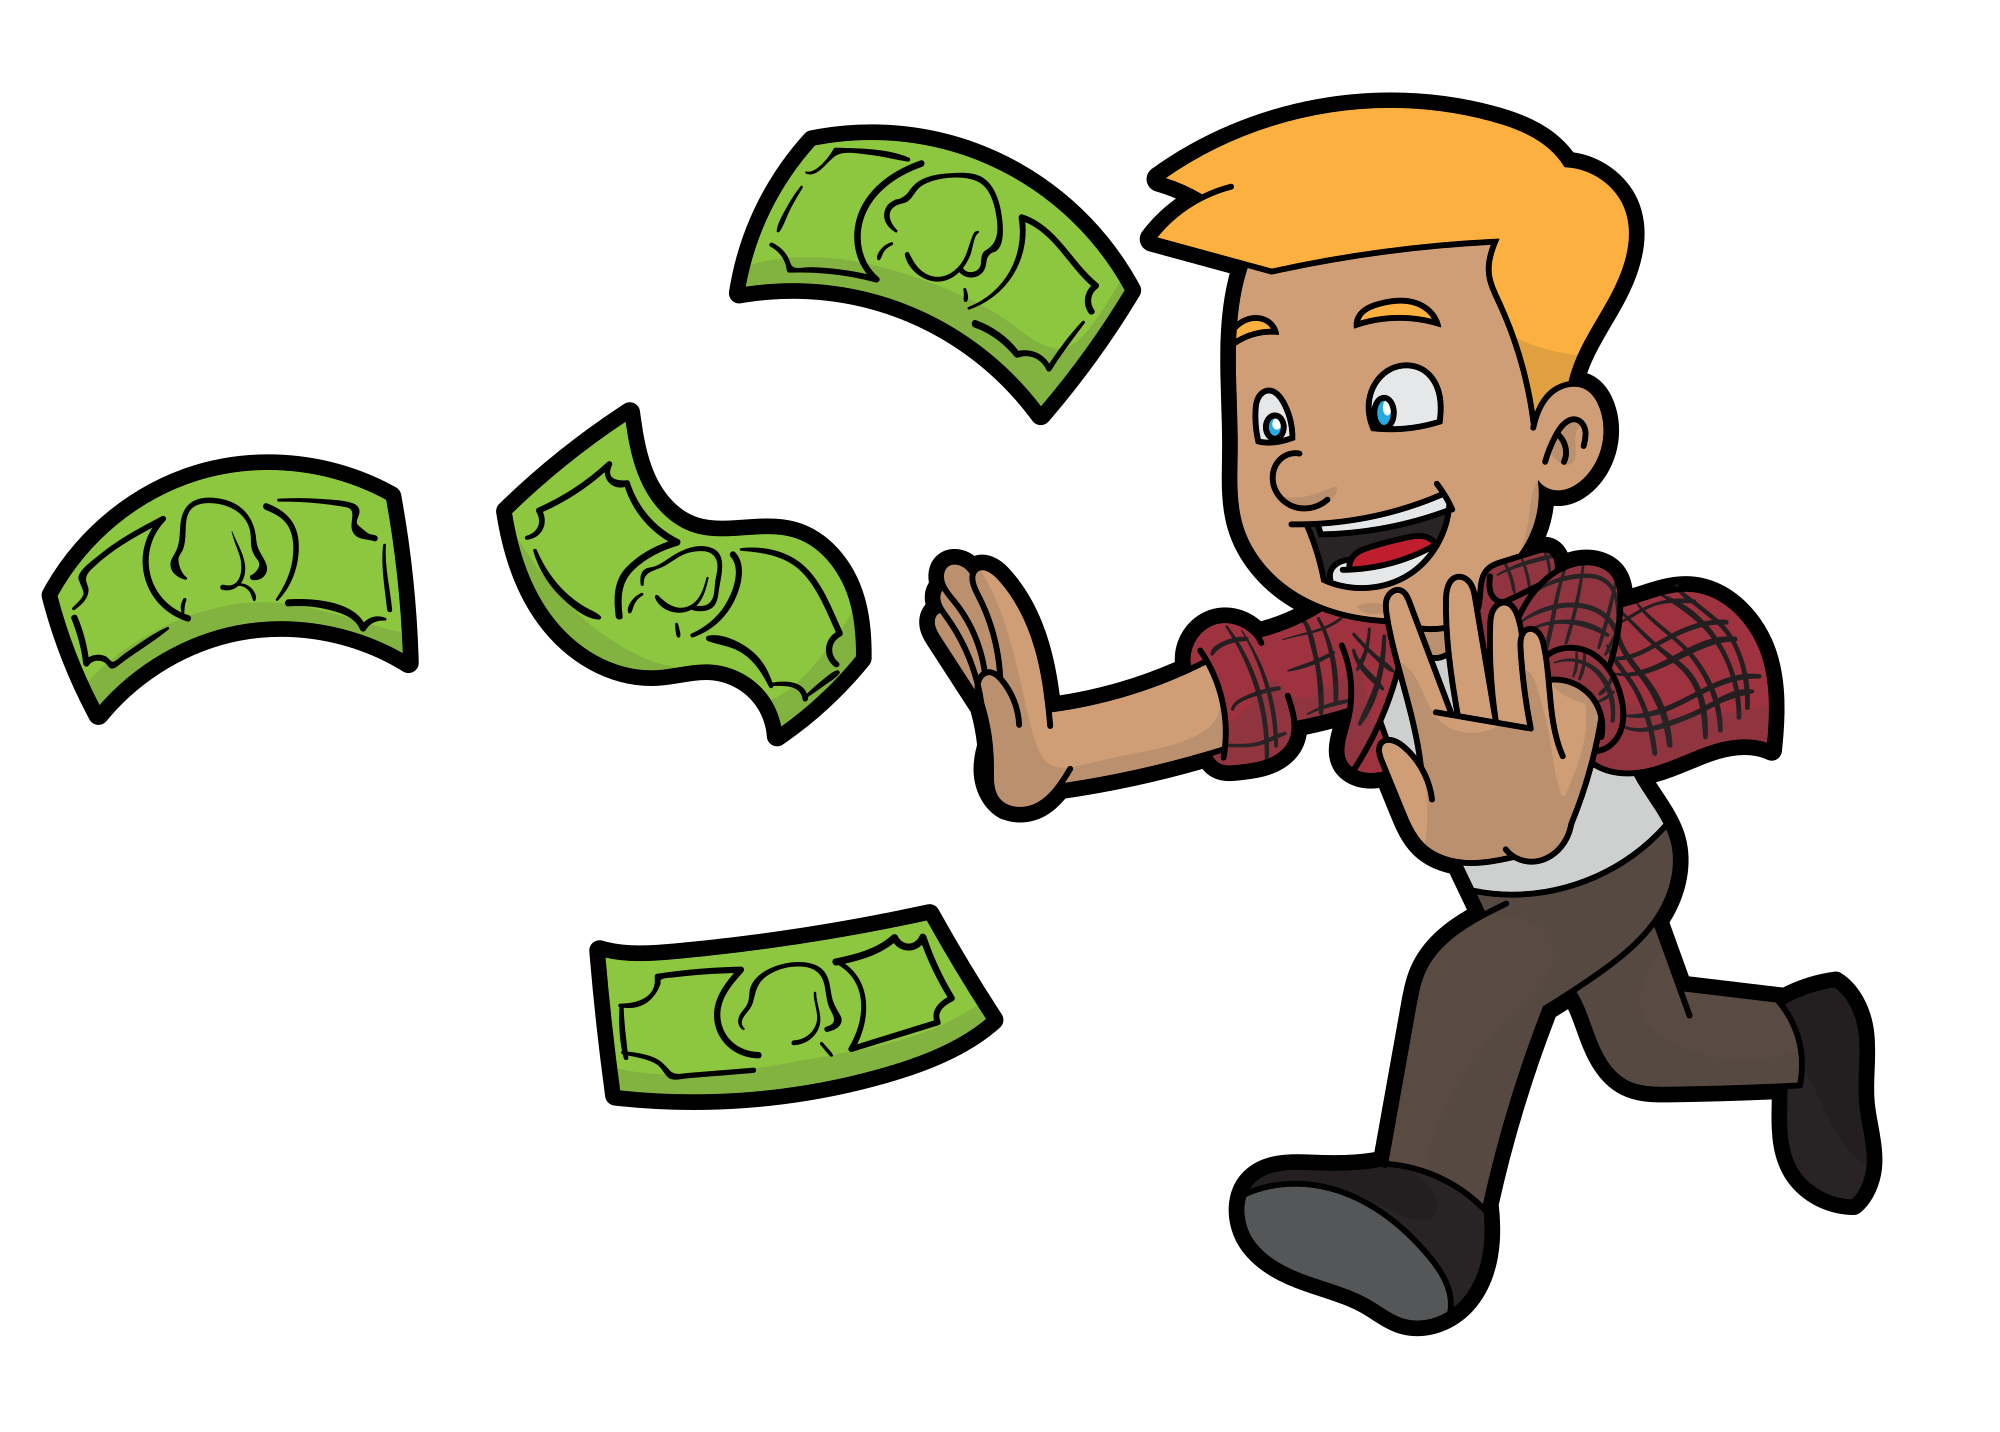 Spend money game. Деньги иллюстрация. Деньги мультяшные. Мультяшные деньги картинки. Человек с деньгами на прозрачном фоне.